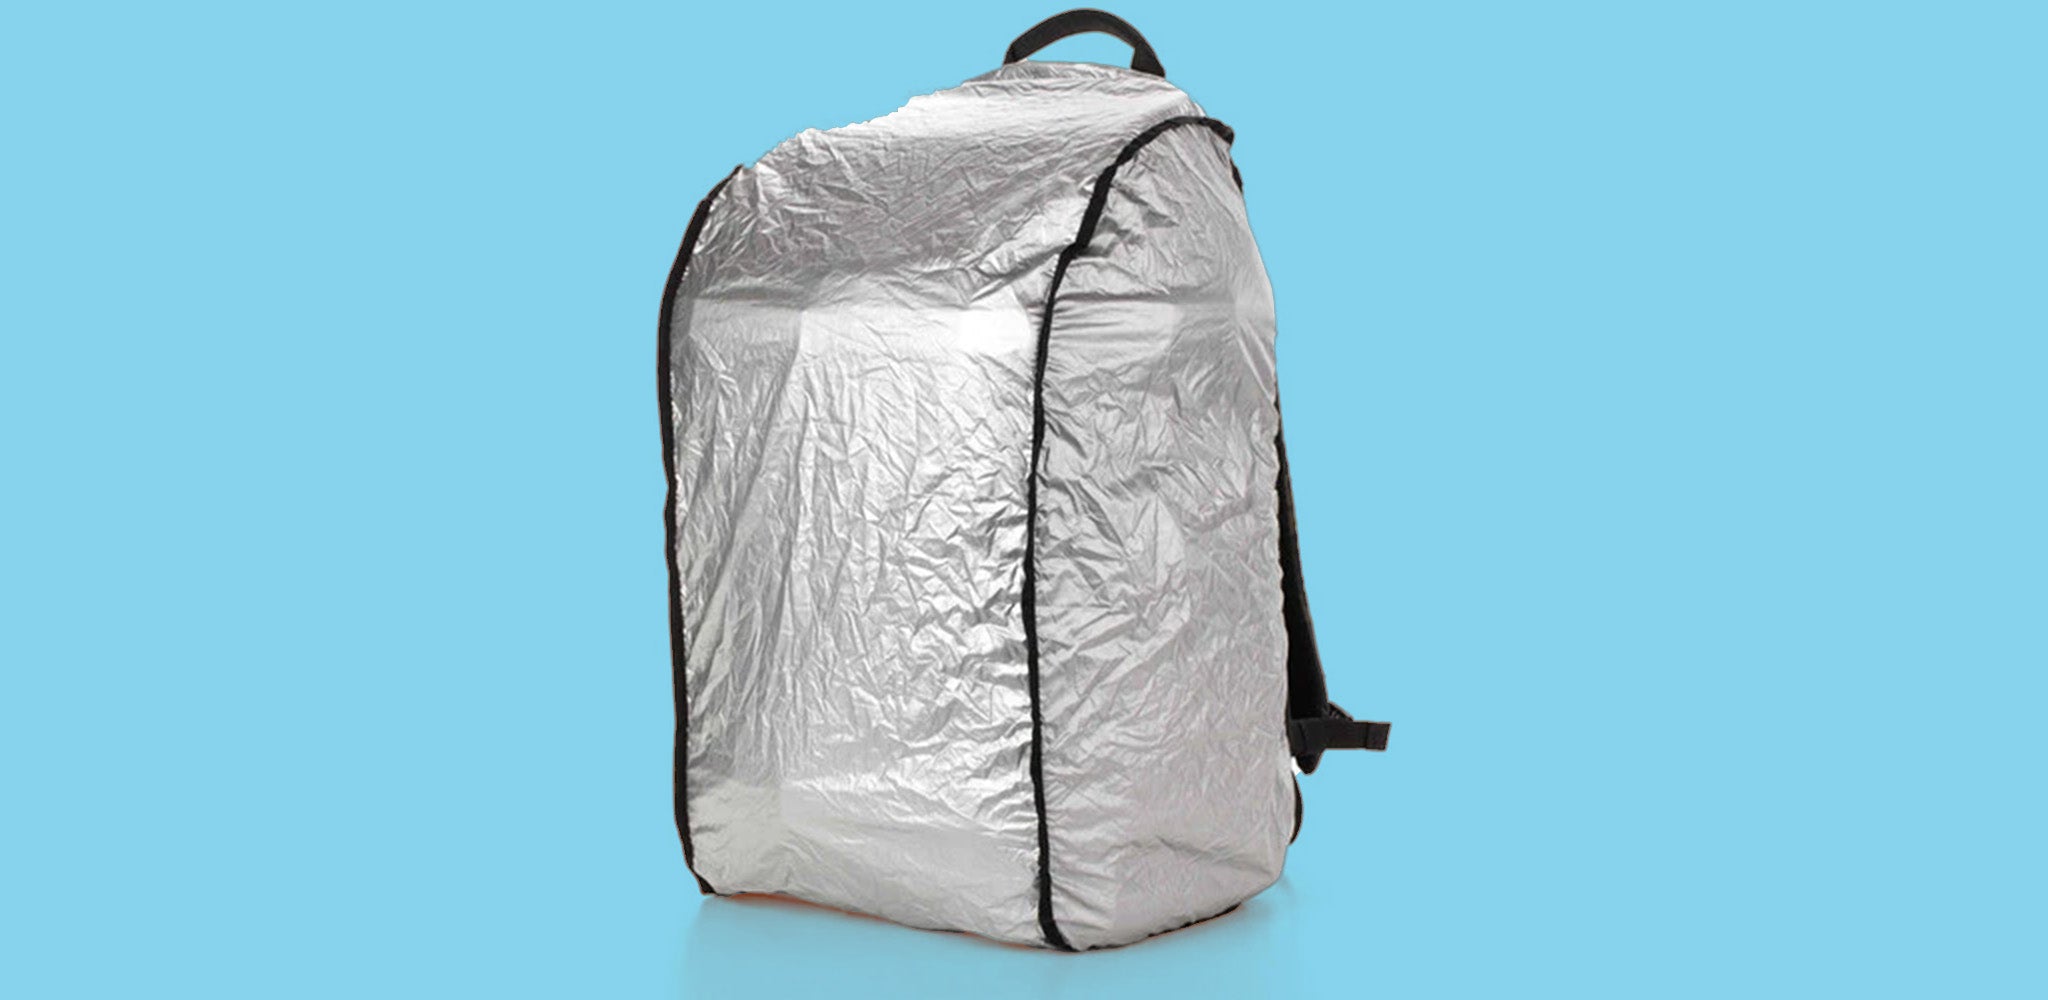 Tenba Bag Protective Cover